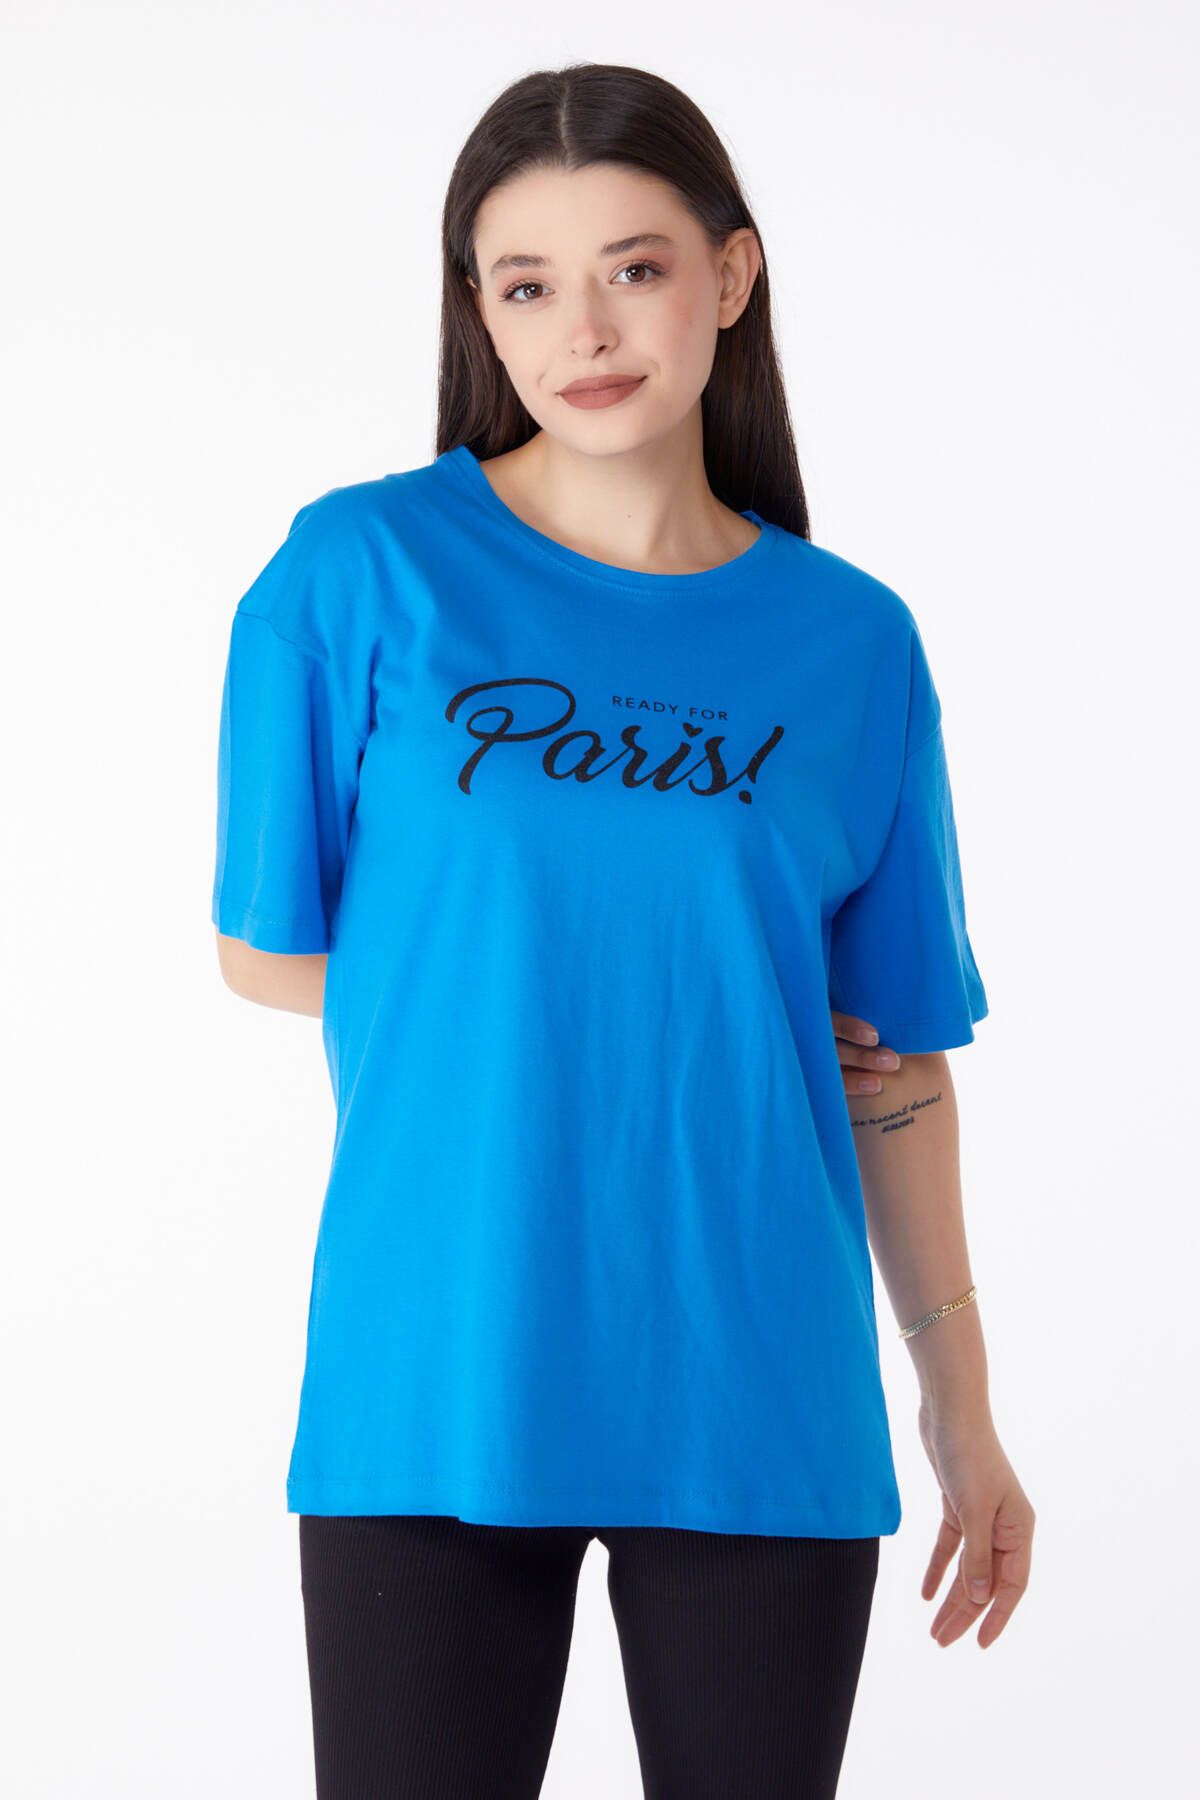 TOFİSA Düz Bisiklet Yaka Kadın Mavi Baskılı T-shirt - 25298